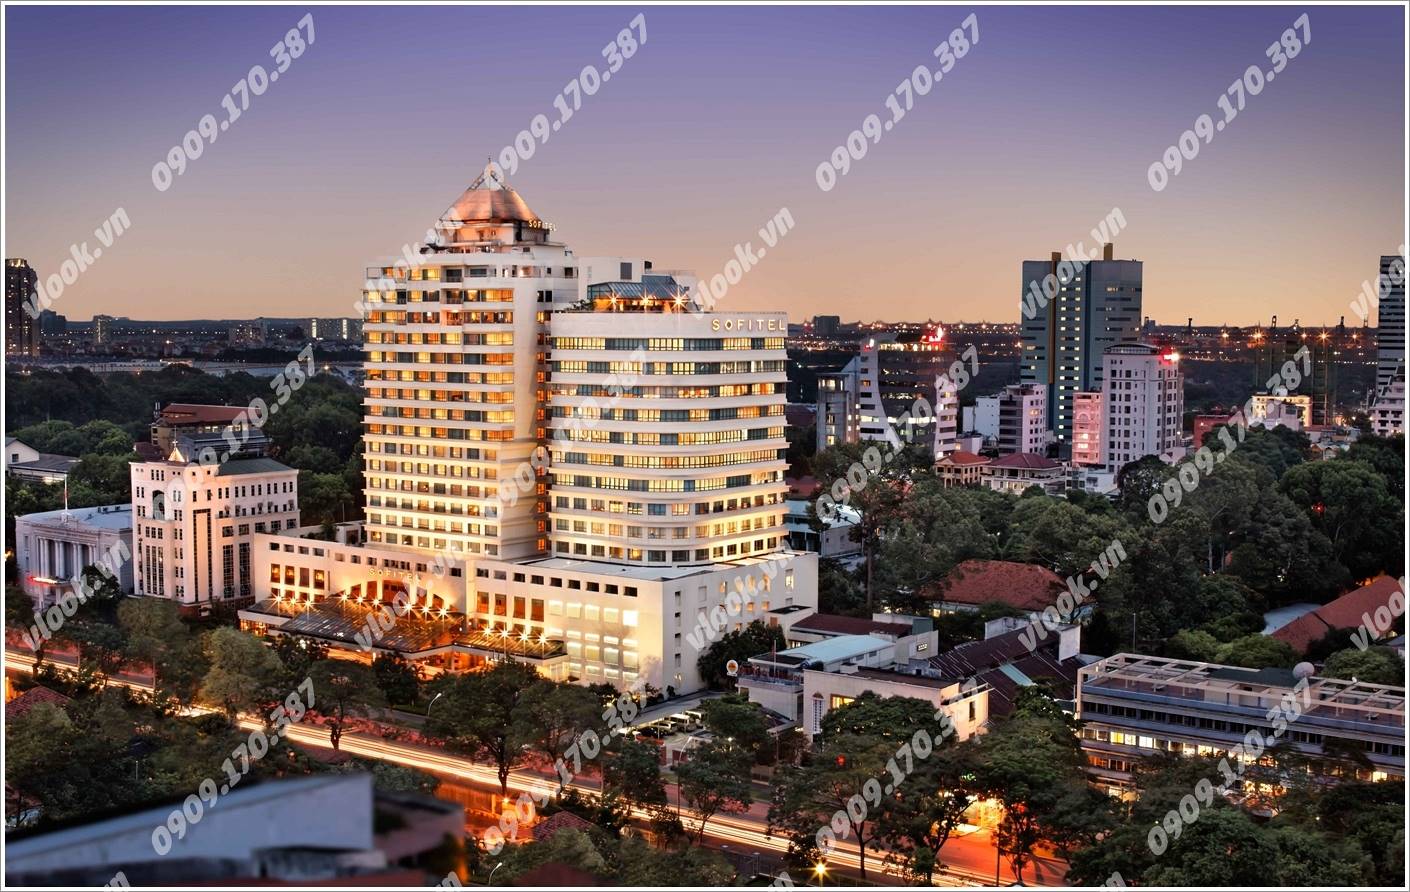 Cao ốc cho thuê văn phòng Sofitel Plaza Saigon Lê Duẩn Quận 1 - vlook.vn